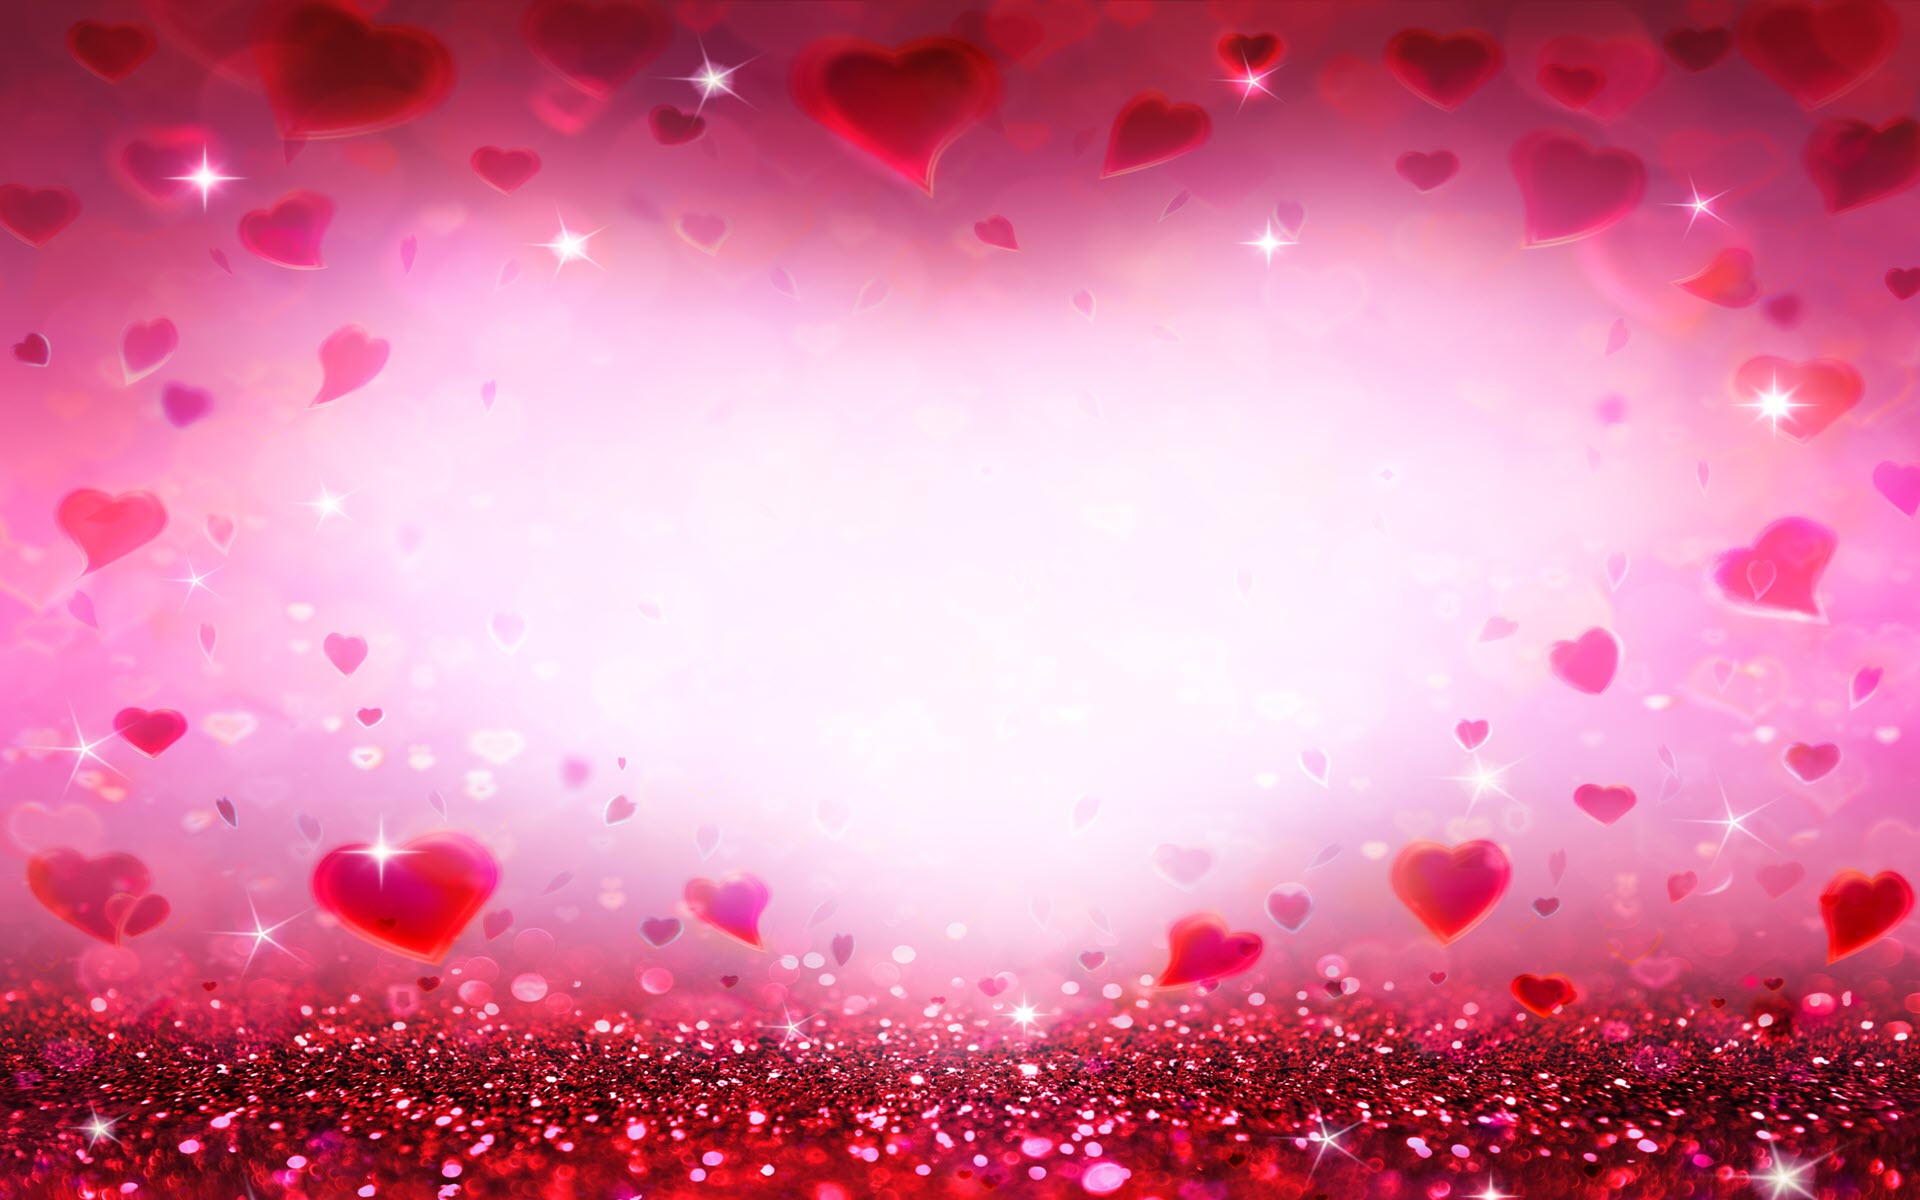 Hình nền trái tim màu đỏ: Hãy thưởng thức hình nền trái tim màu đỏ đầy lãng mạn này! Với sắc đỏ rực rỡ, nó sẽ mang đến cho bạn cảm giác yêu đương và ấm áp. Hãy để người yêu của bạn bất ngờ trước màn hình máy tính với hình nền này nhé!